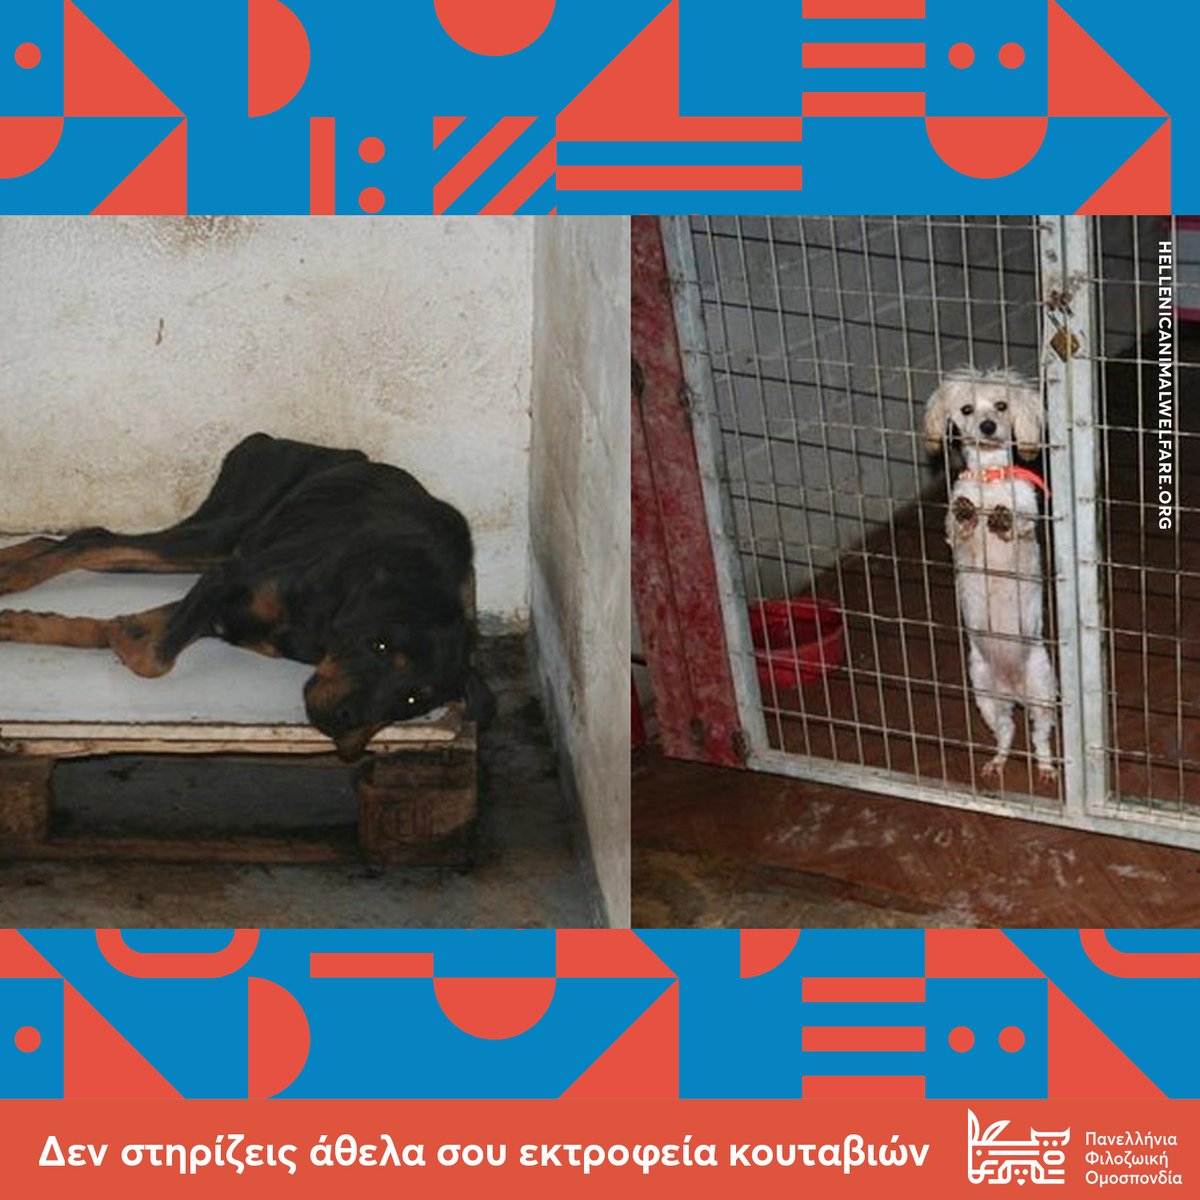 Δεν στηρίζεις άθελα σου εκτροφεία κουταβιών
Όταν επιλέγεις να υιοθετήσεις ένα ζώο, επιλέγεις να μη στηρίξεις τα απάνθρωπα εκτροφεία κουταβιών (puppy mills).

#puppymills #Φιλοζωική #φιλοζωία #animalrights #greece #Ελλάδα #cats #stray #Αδέσποτο #γάτες #athens #Αδέσποτα